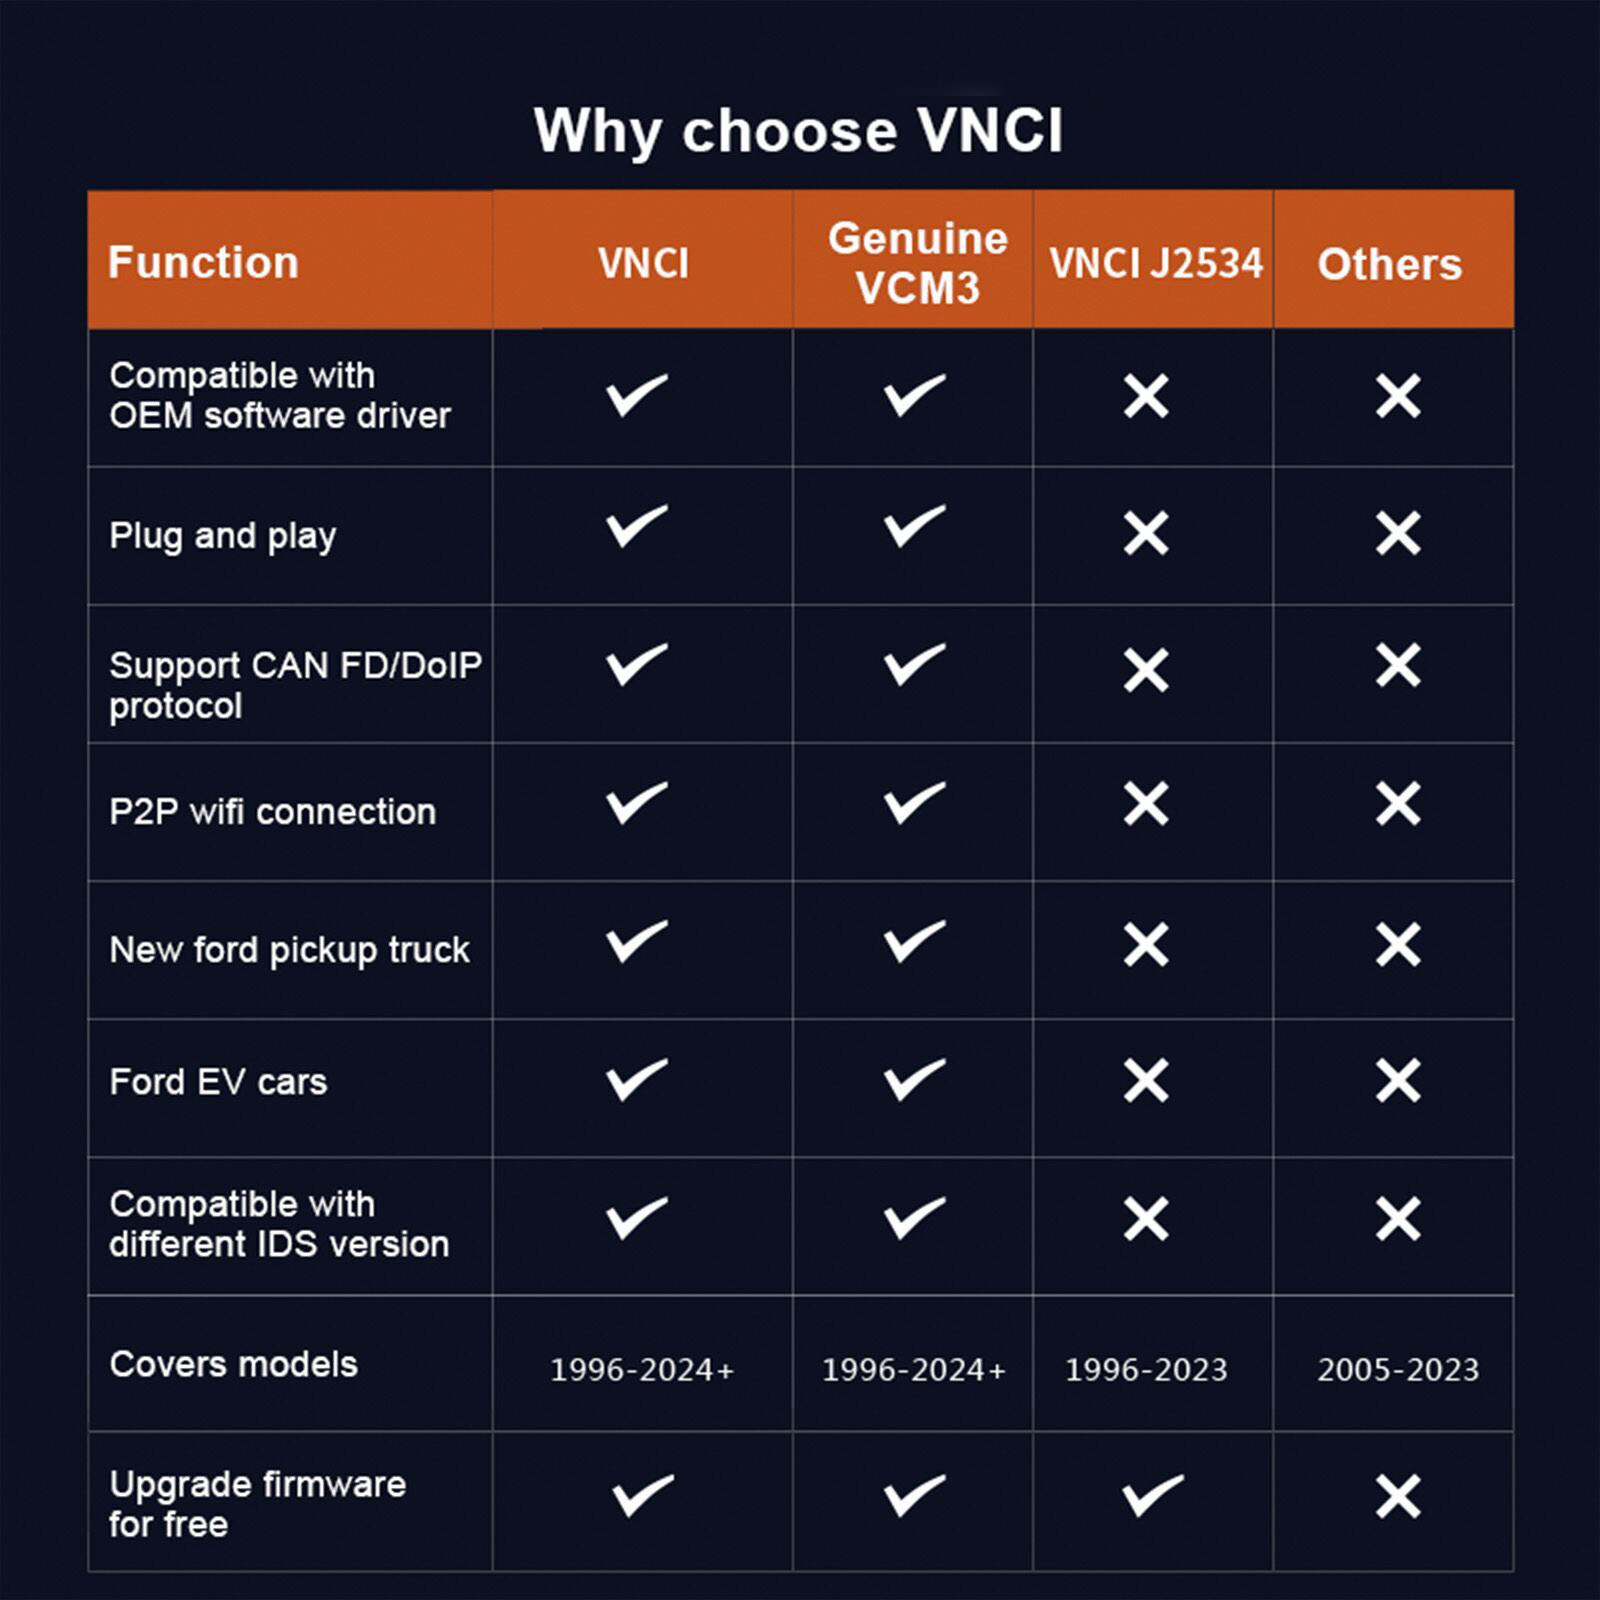 vnci-vcm3-vs-original-vcm3-vs-vnci-j2534